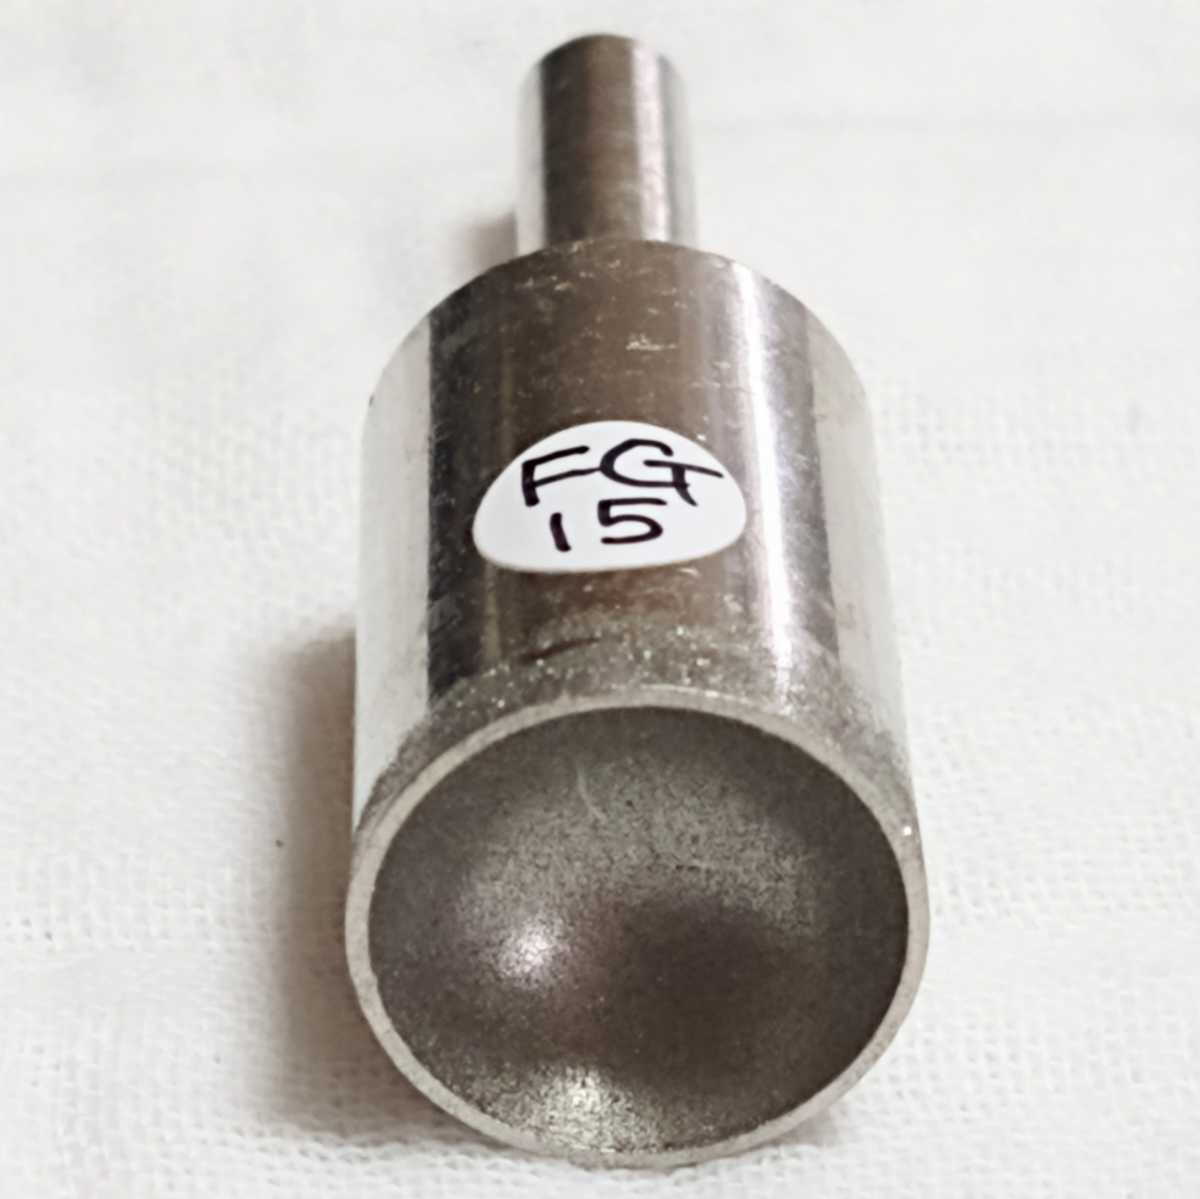 SELE FG15 15mm内径 丸カップ型 研削 研磨 ダイヤモンドビット